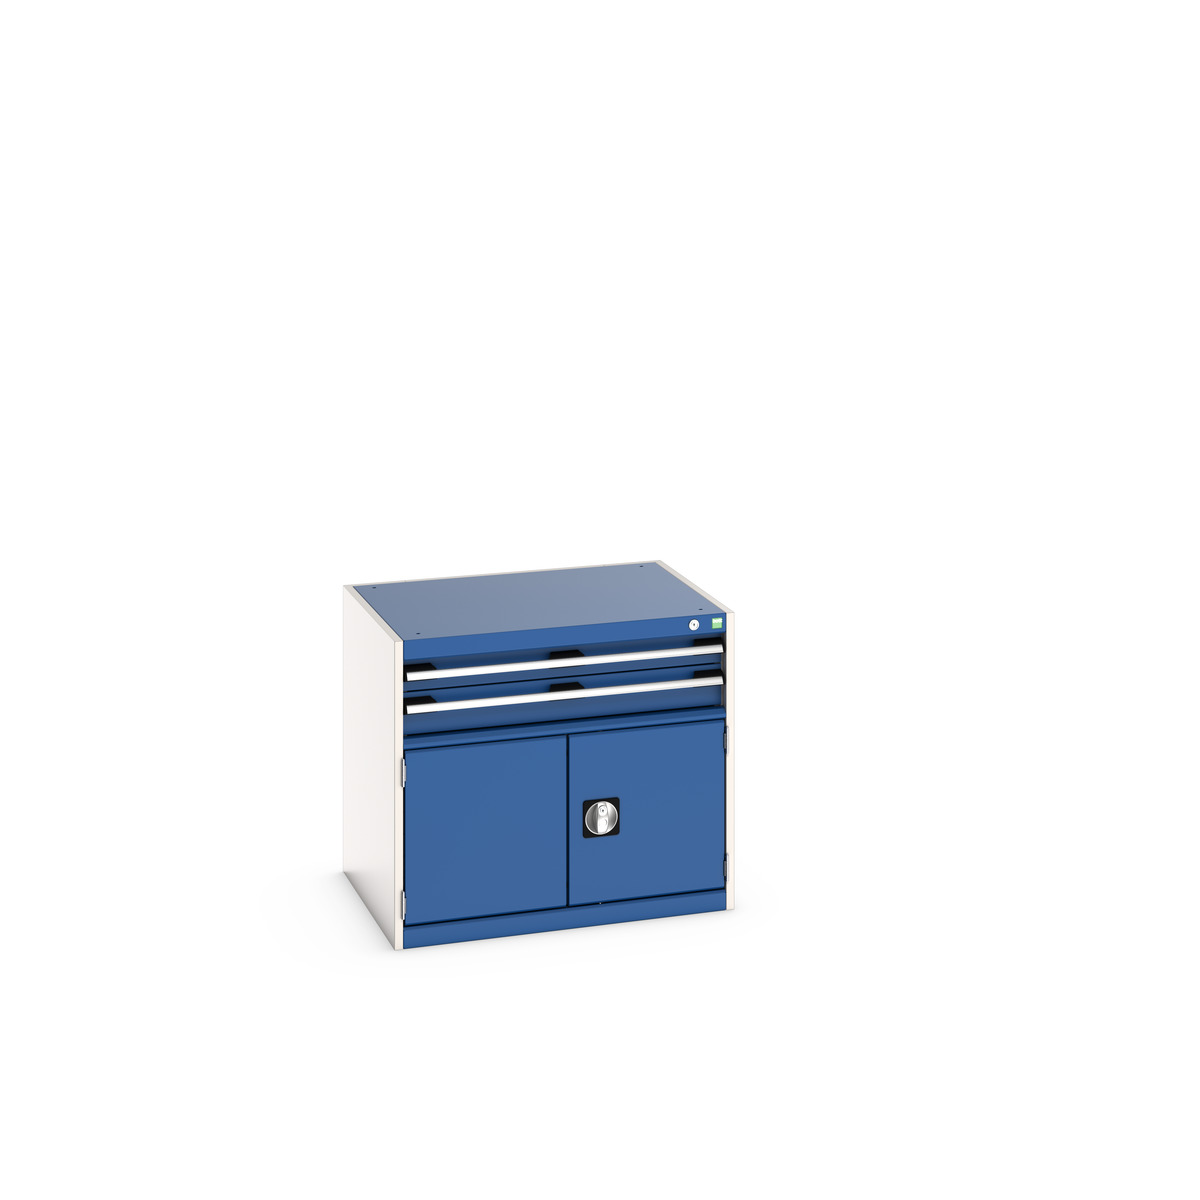 40020012.11V - cubio drawer-door cabinet